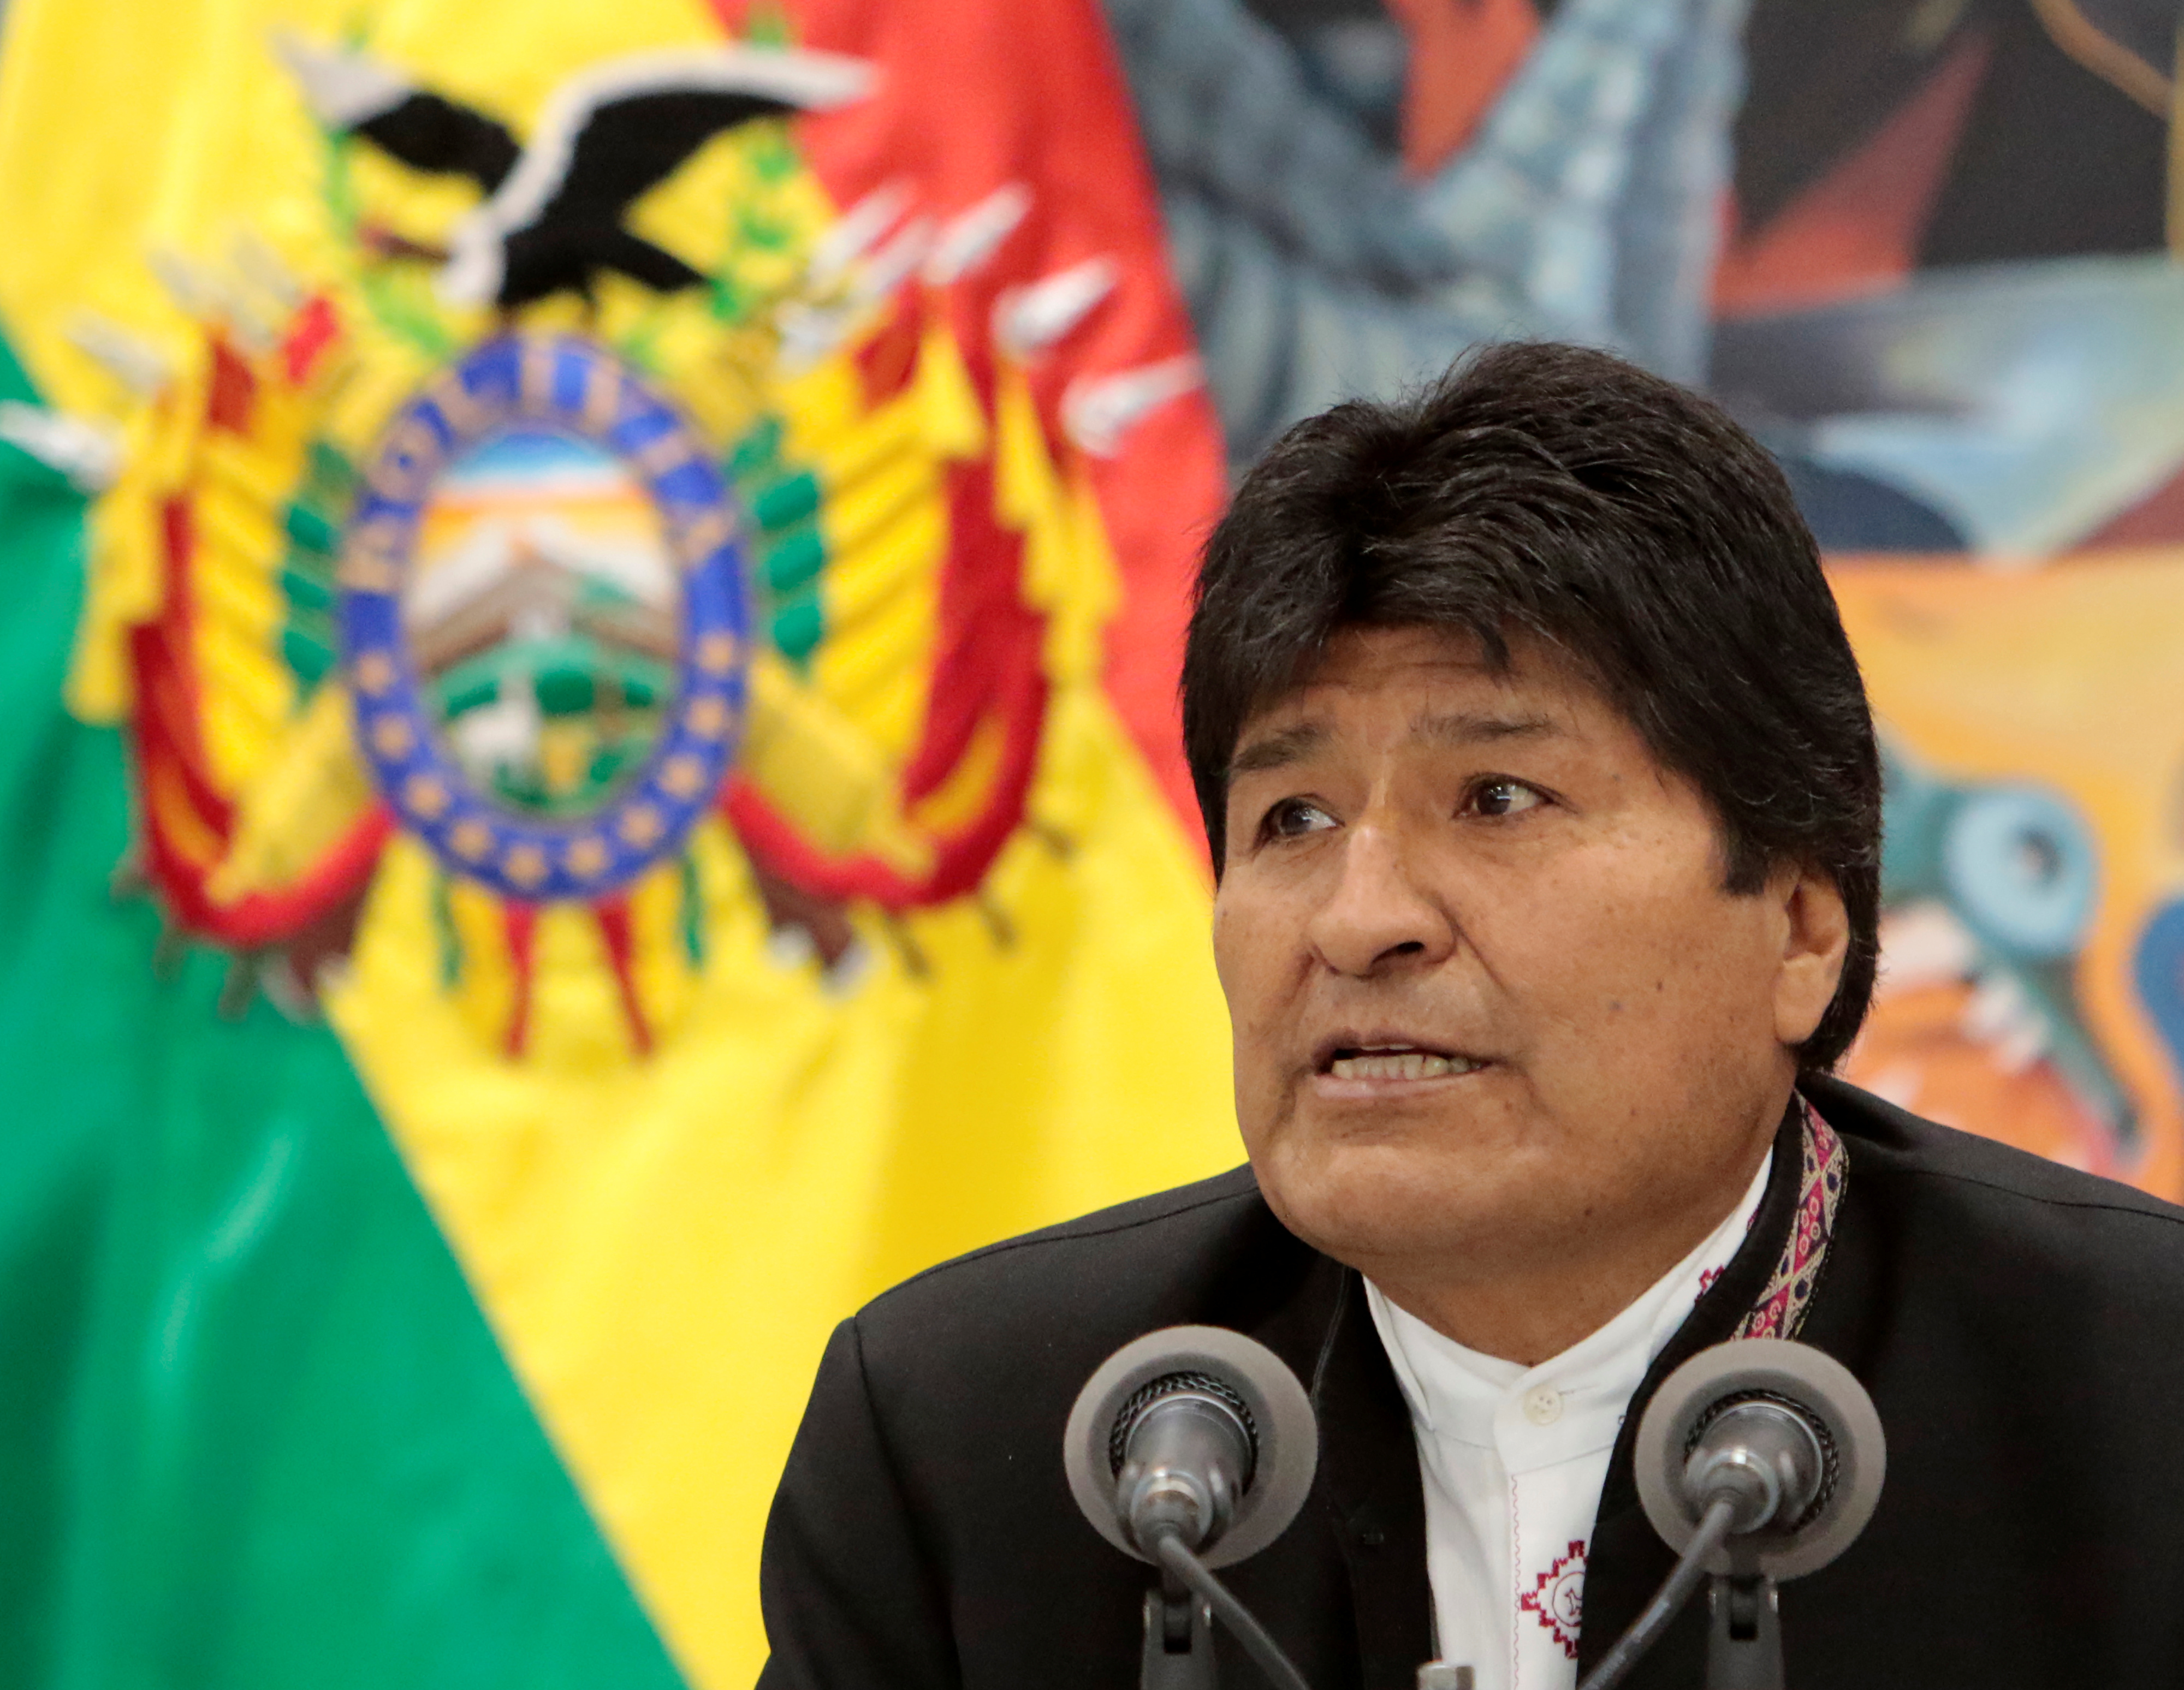 Evo Morales alerta que se “prepara” golpe de estado en Bolivia para esta semana